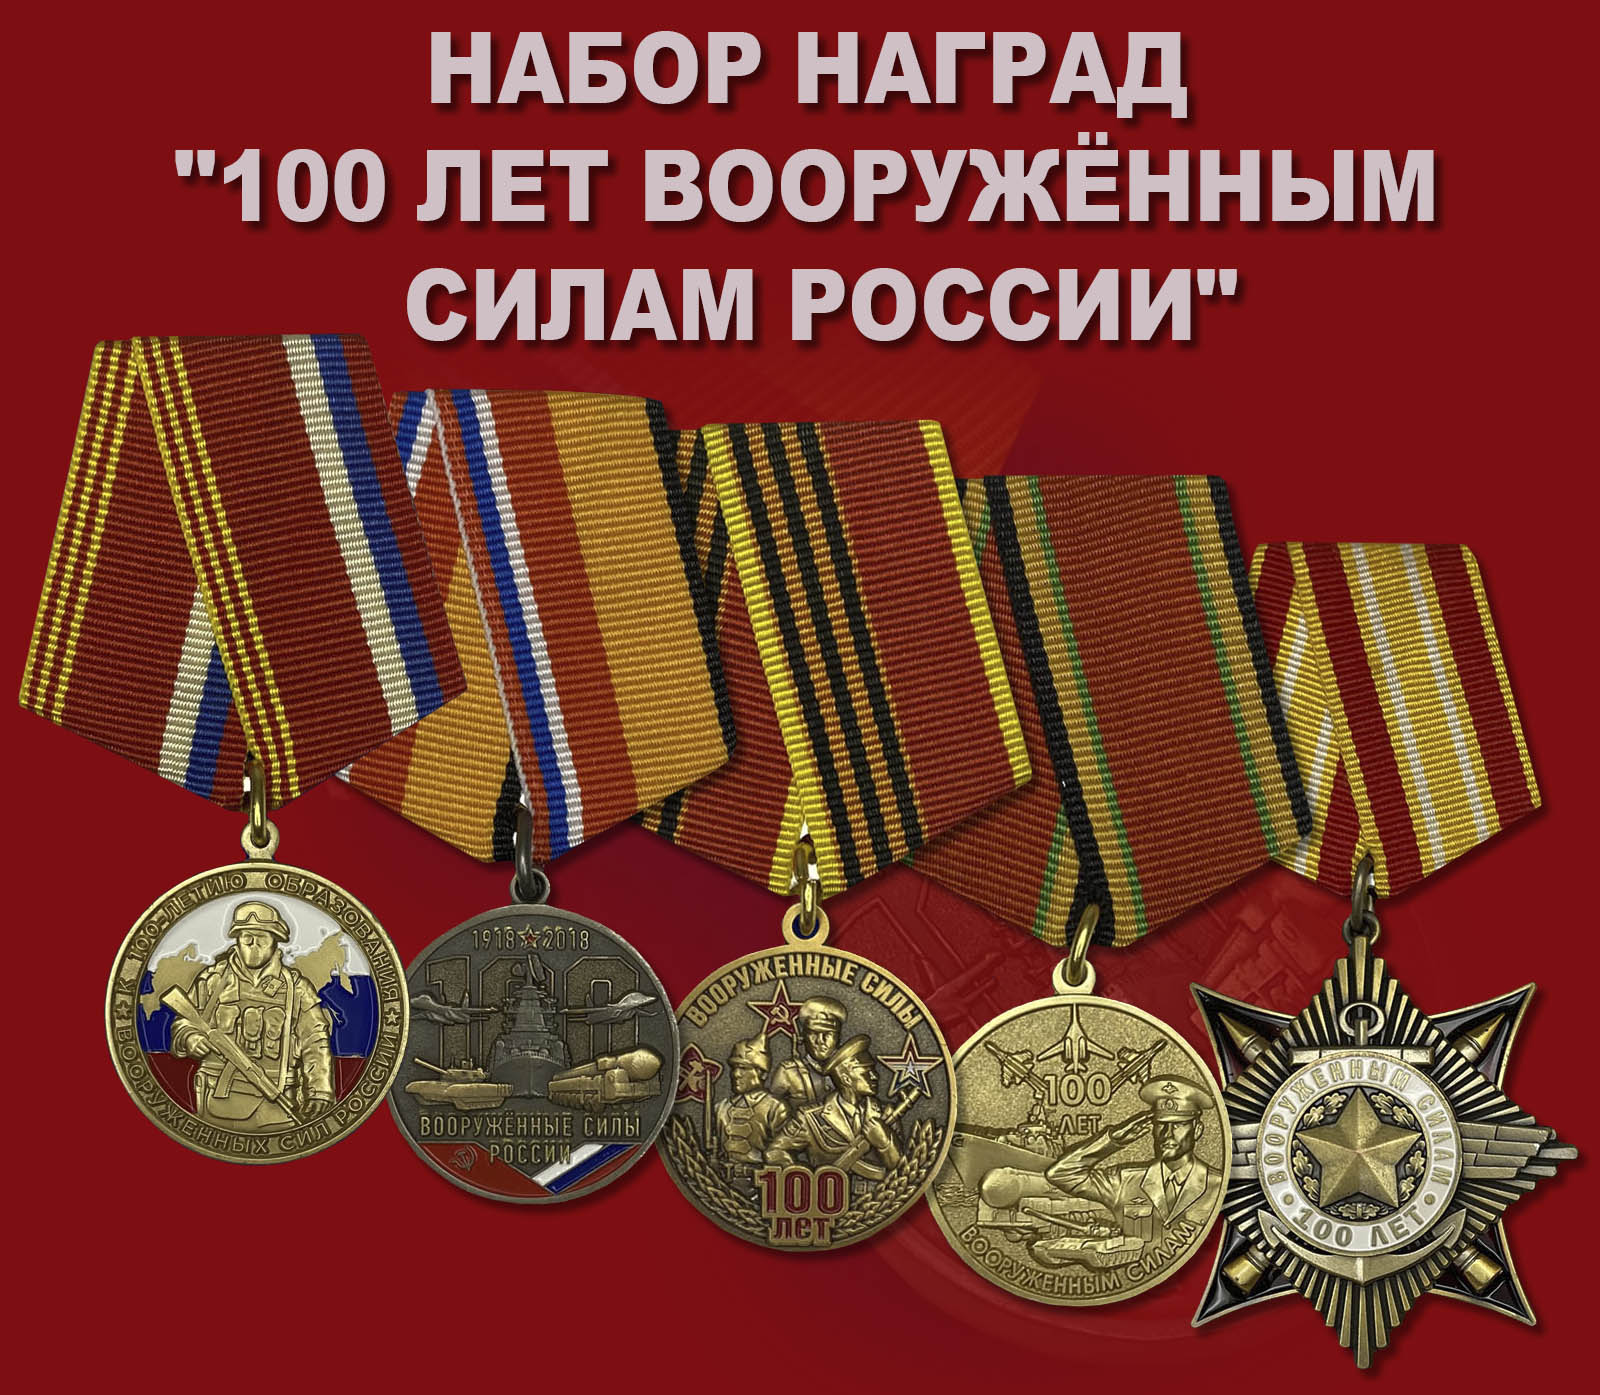 Купить набор наград "100 лет Вооружённым силам России"